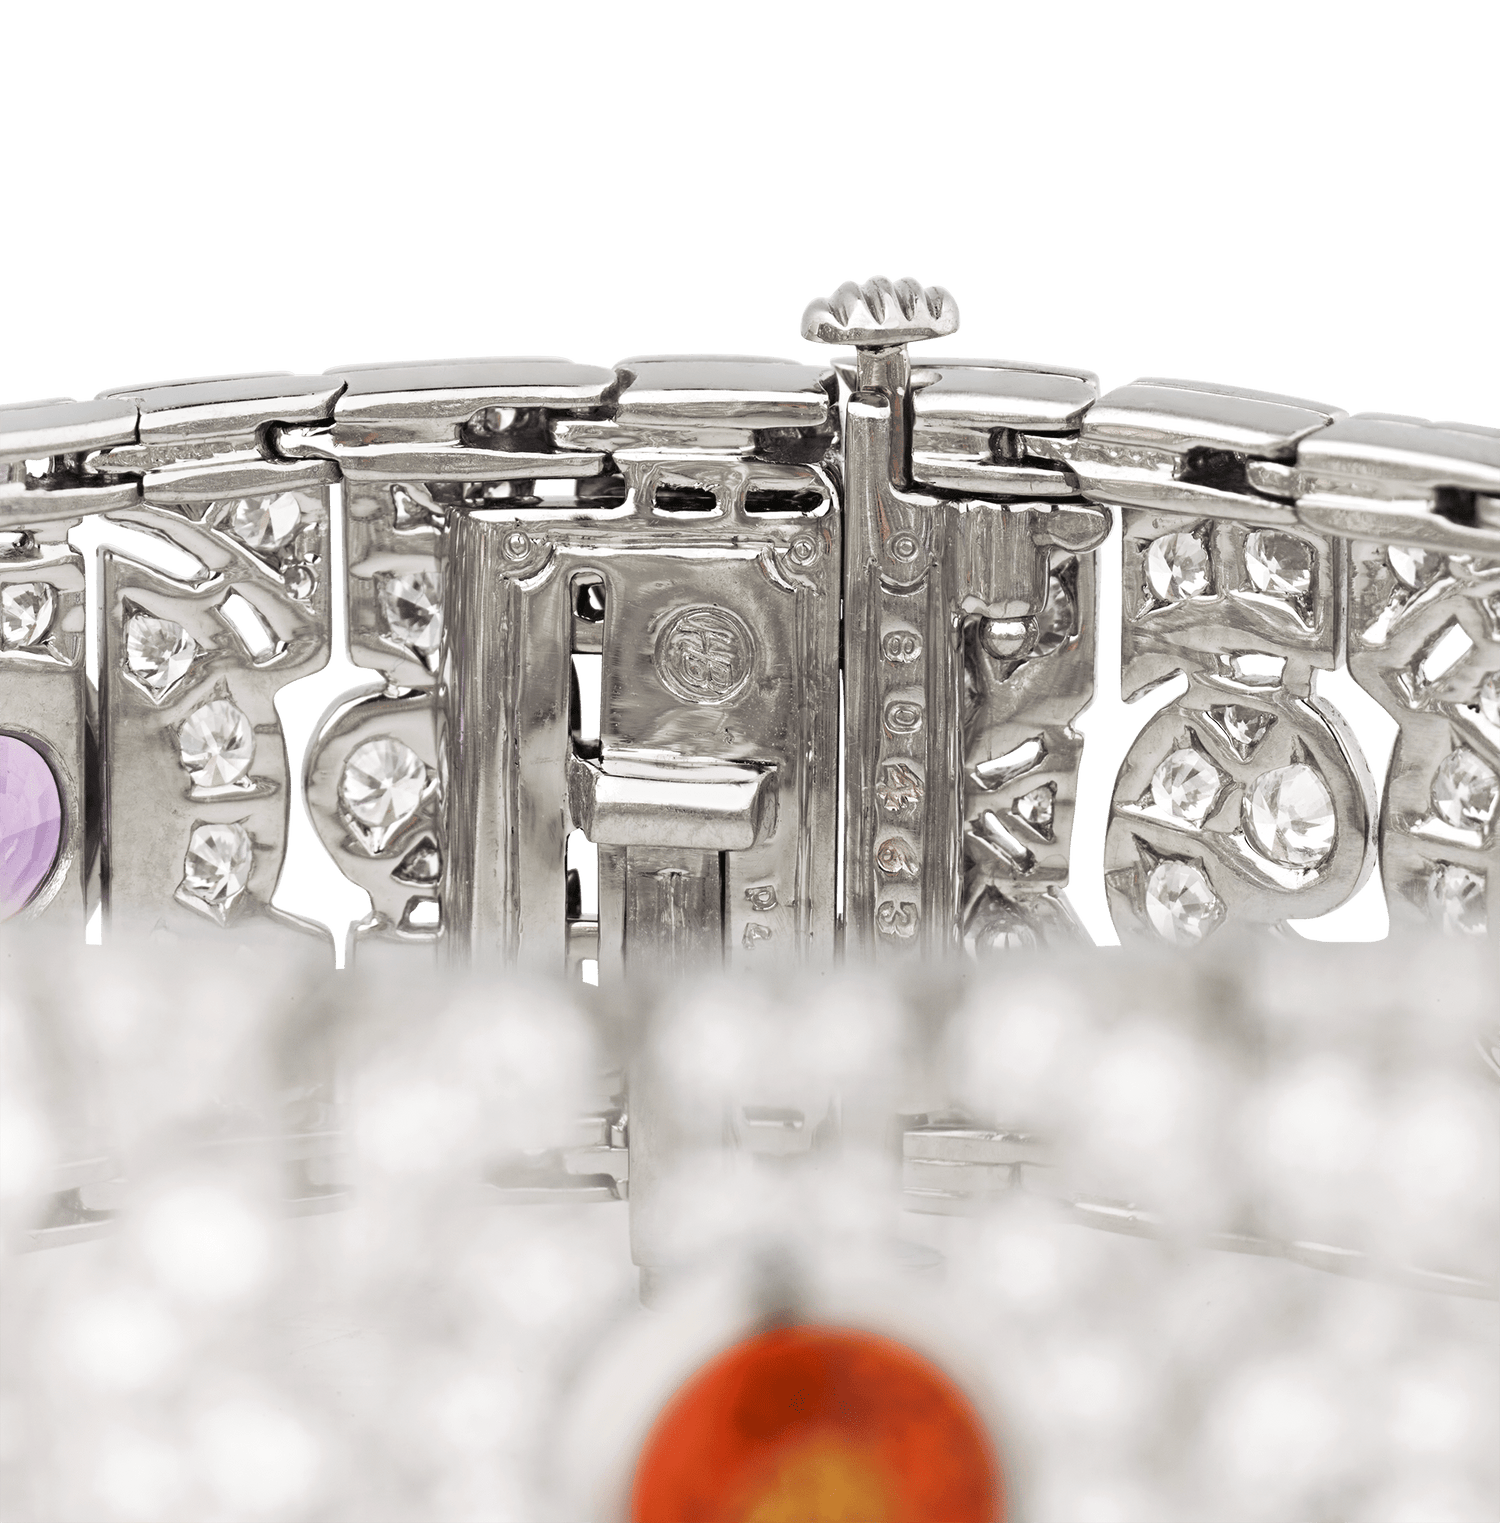 Oscar Heyman Multi-Color Sapphire Bracelet, 8.69 Carats